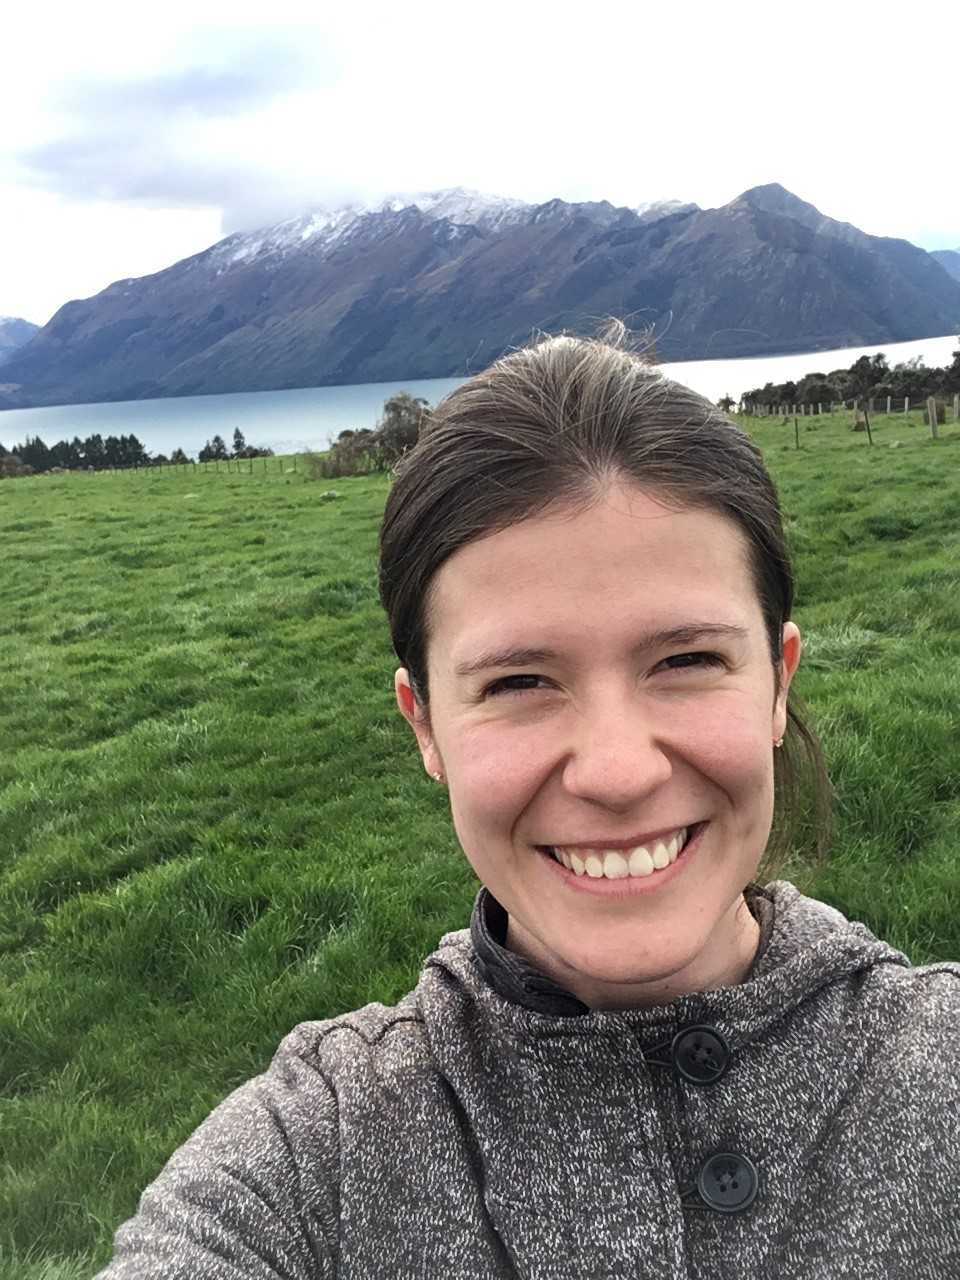 Carrie Winklepleck in New Zealand